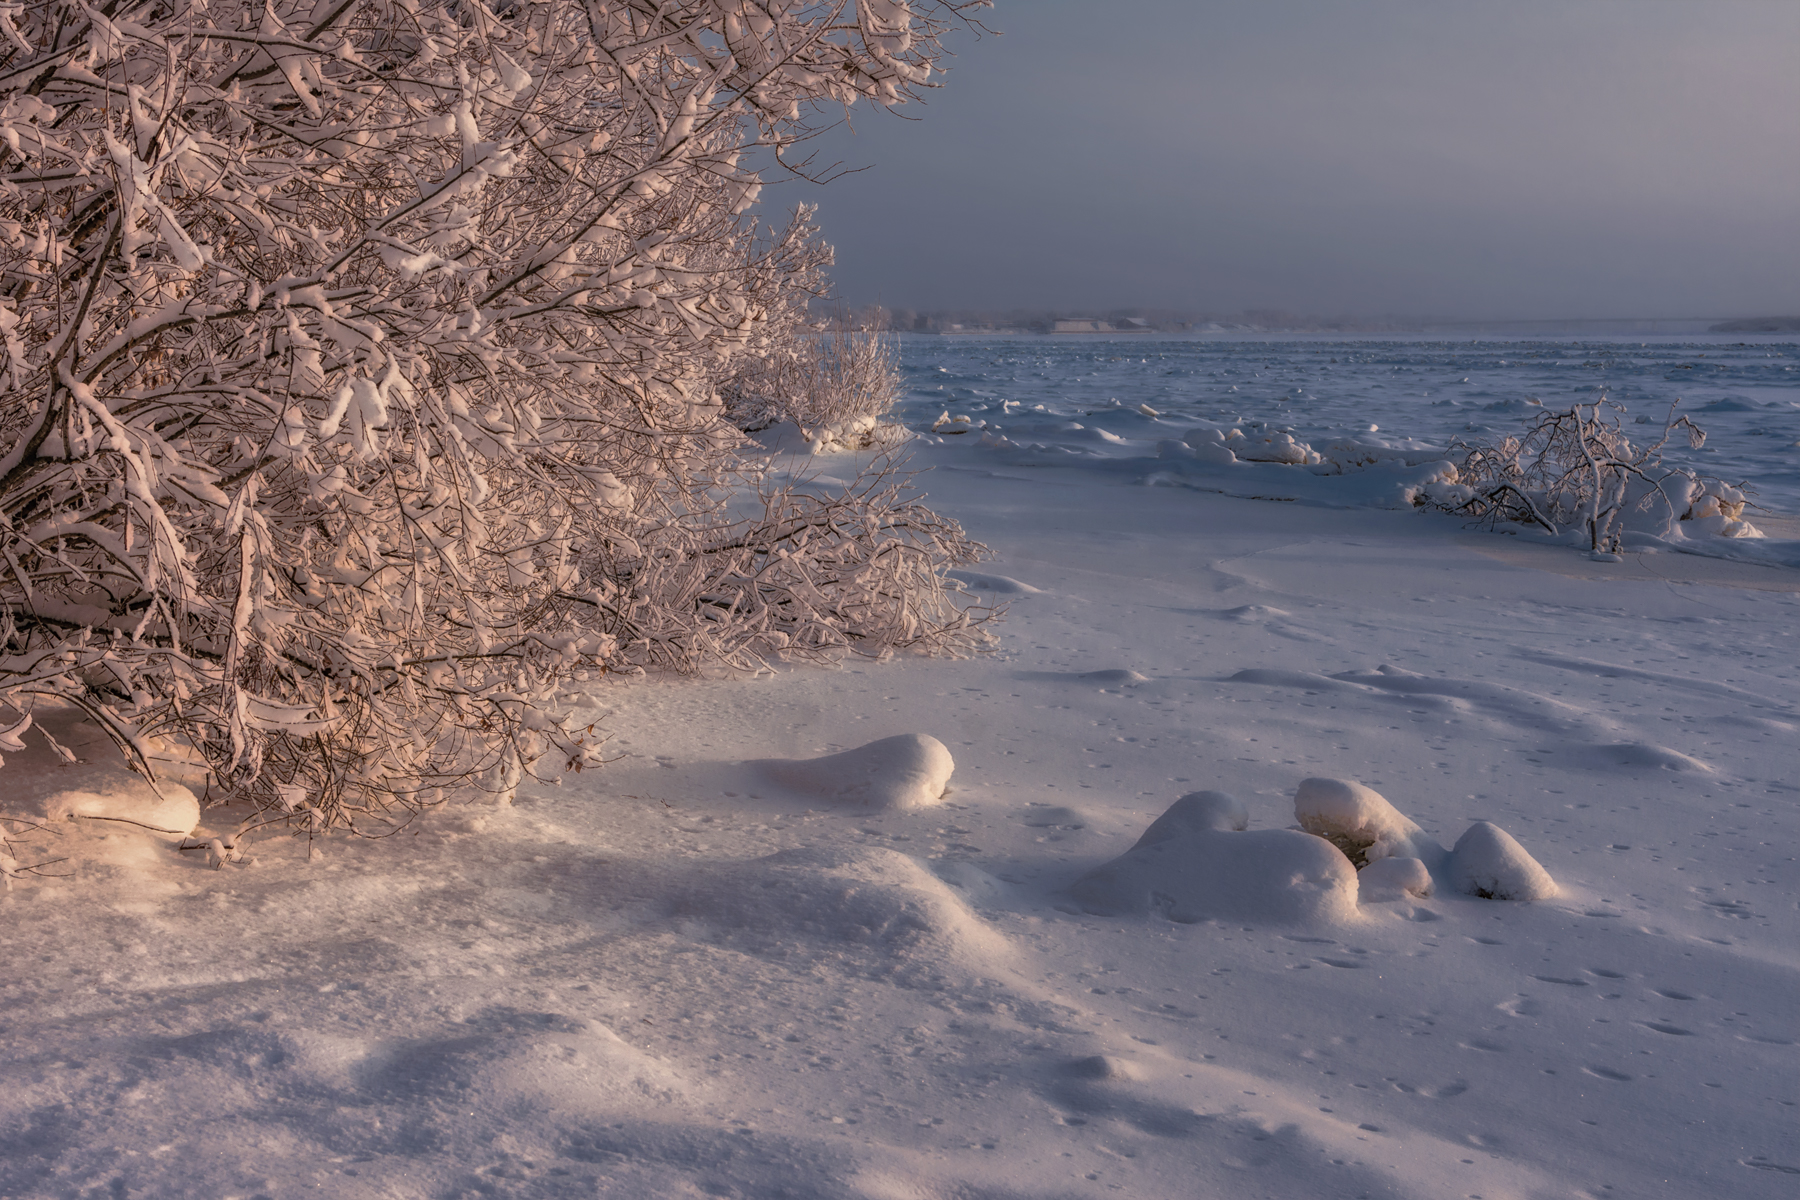 зима декабрь иней снег лёд мороз деревья кусты река берег северная двина архангельск, Вера Ра